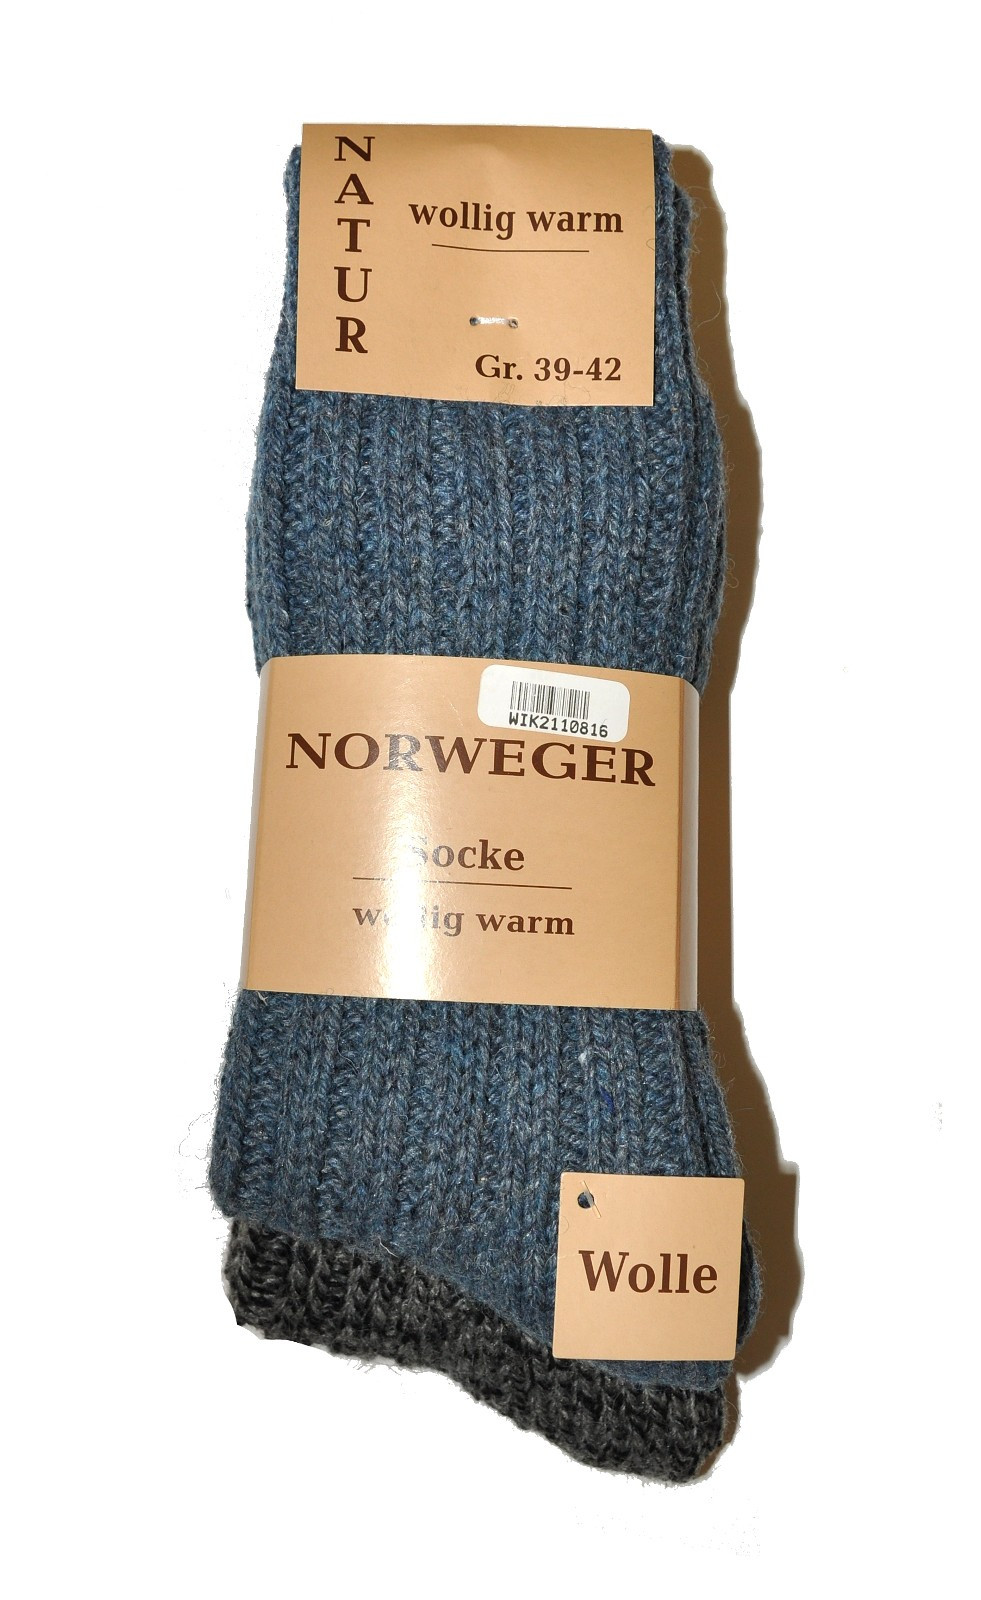 Pánské ponožky WiK art.21108 Norweger Socke A'2 béžovo-béžová světlá 43-46